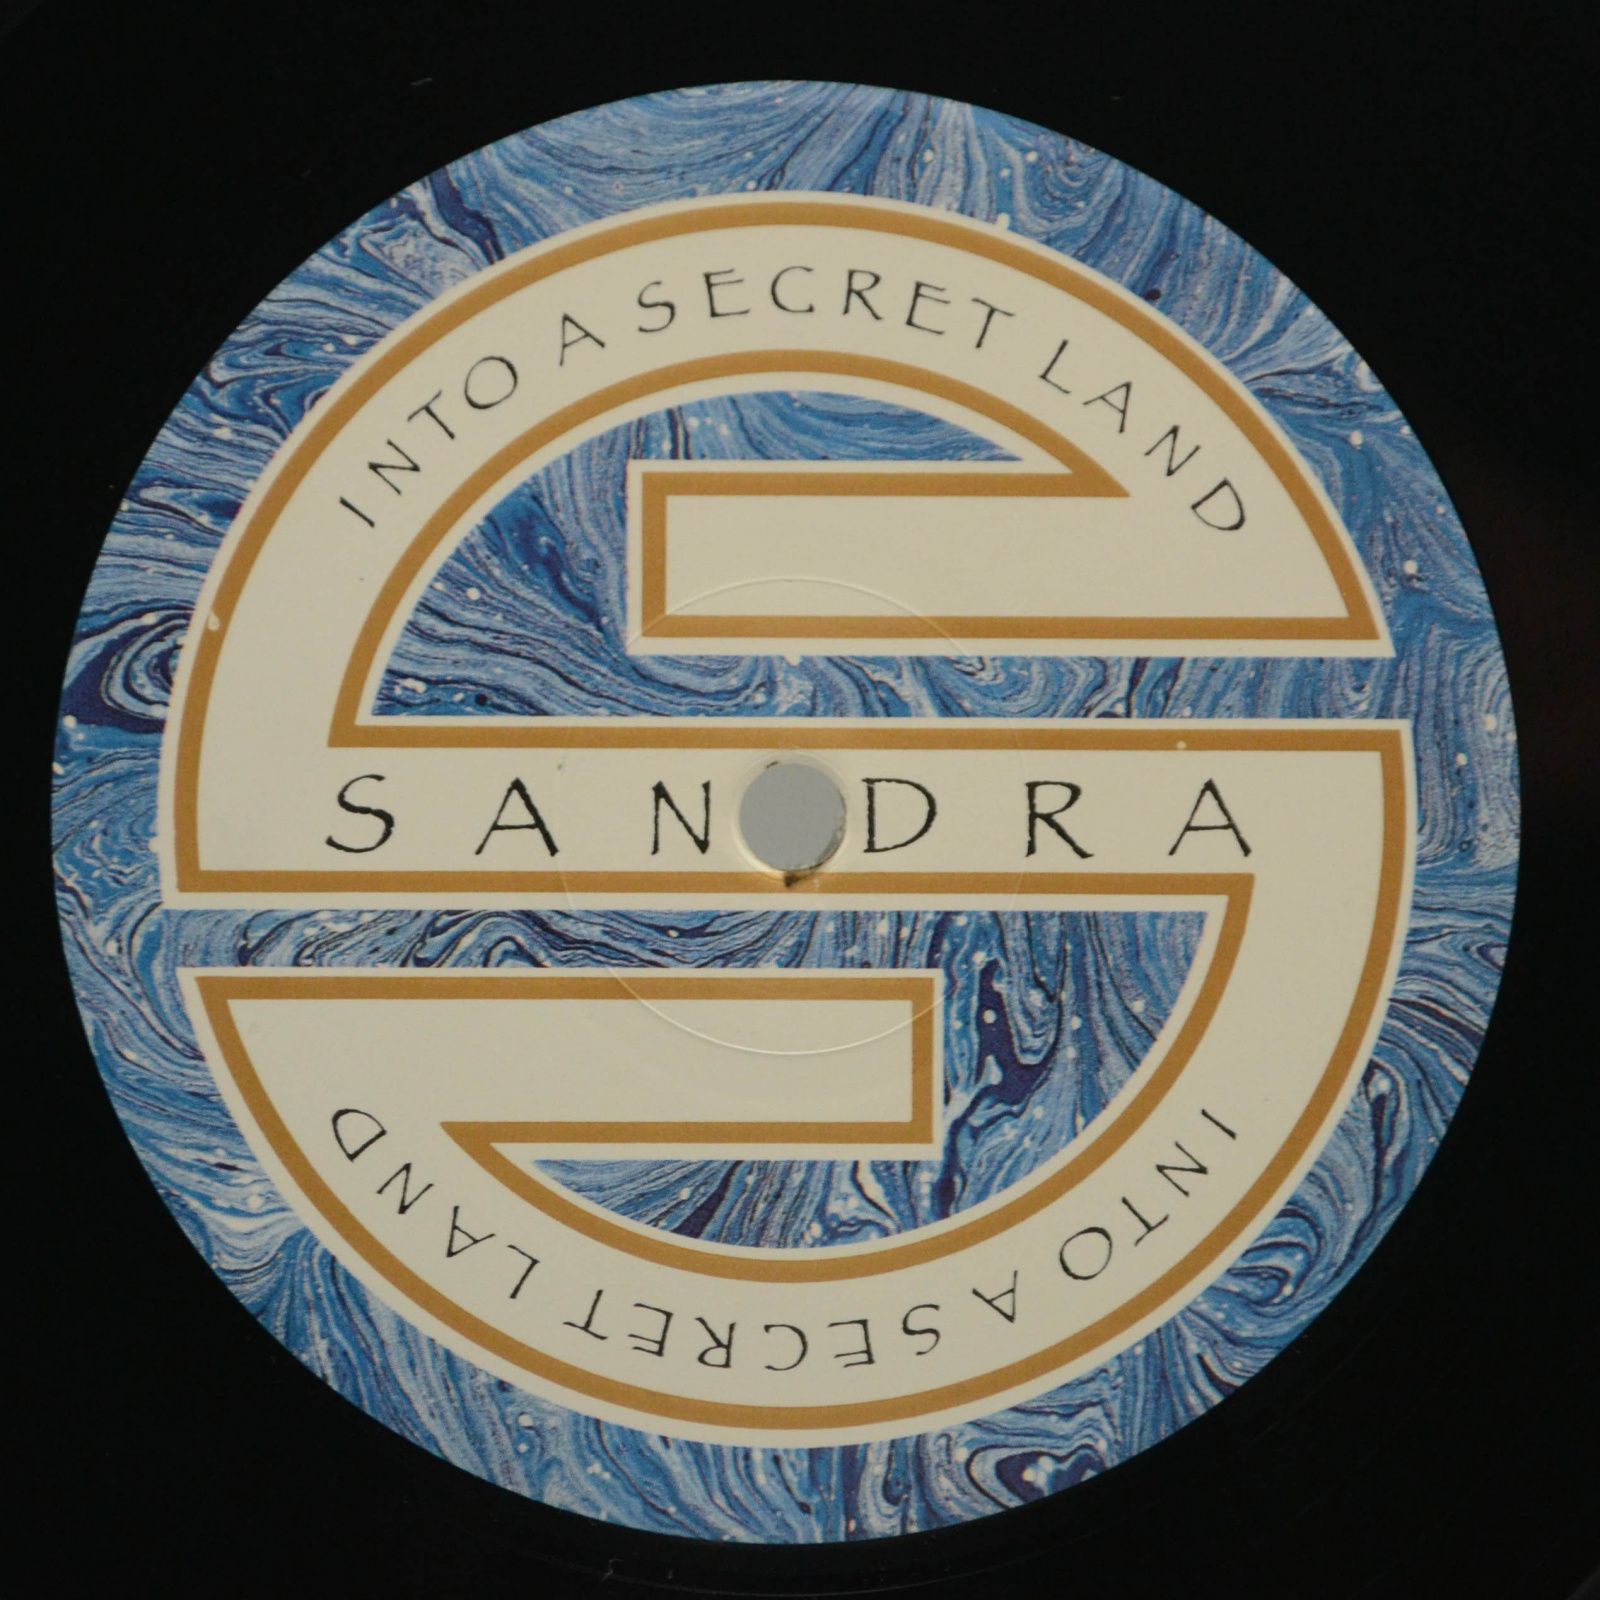 Sandra — Into A Secret Land, 1988